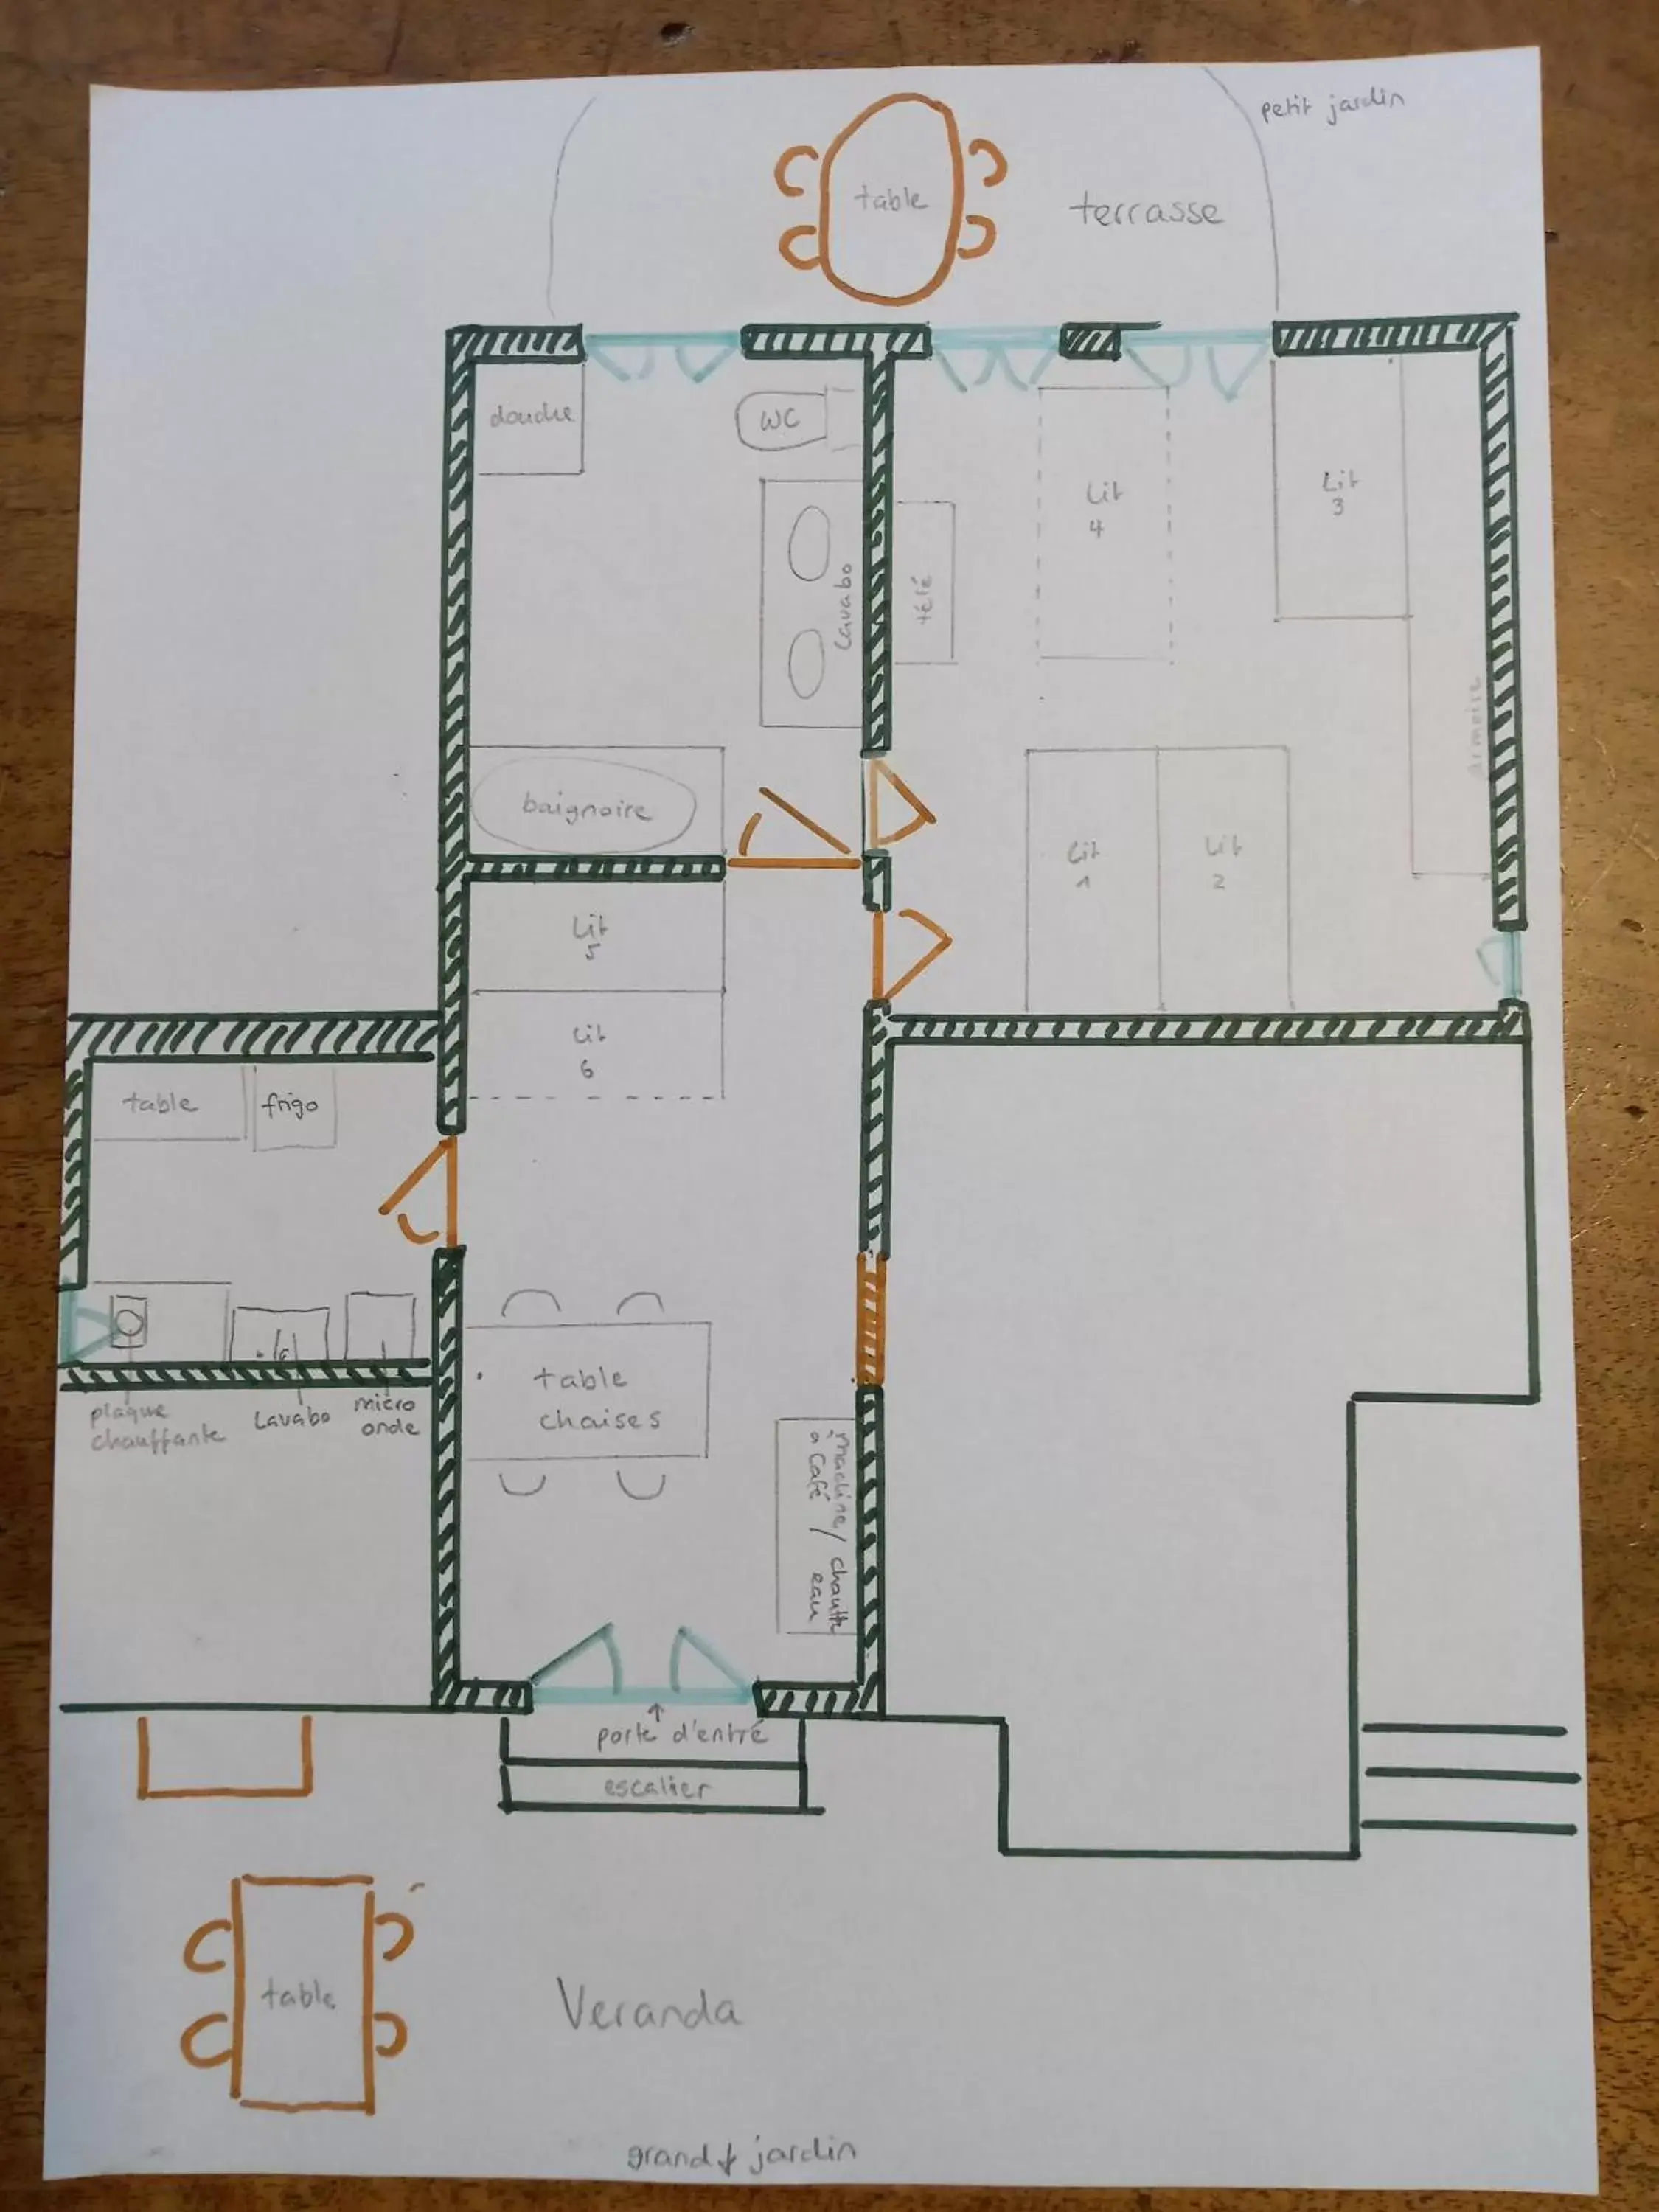 Floor Plan in BnB Chantevent